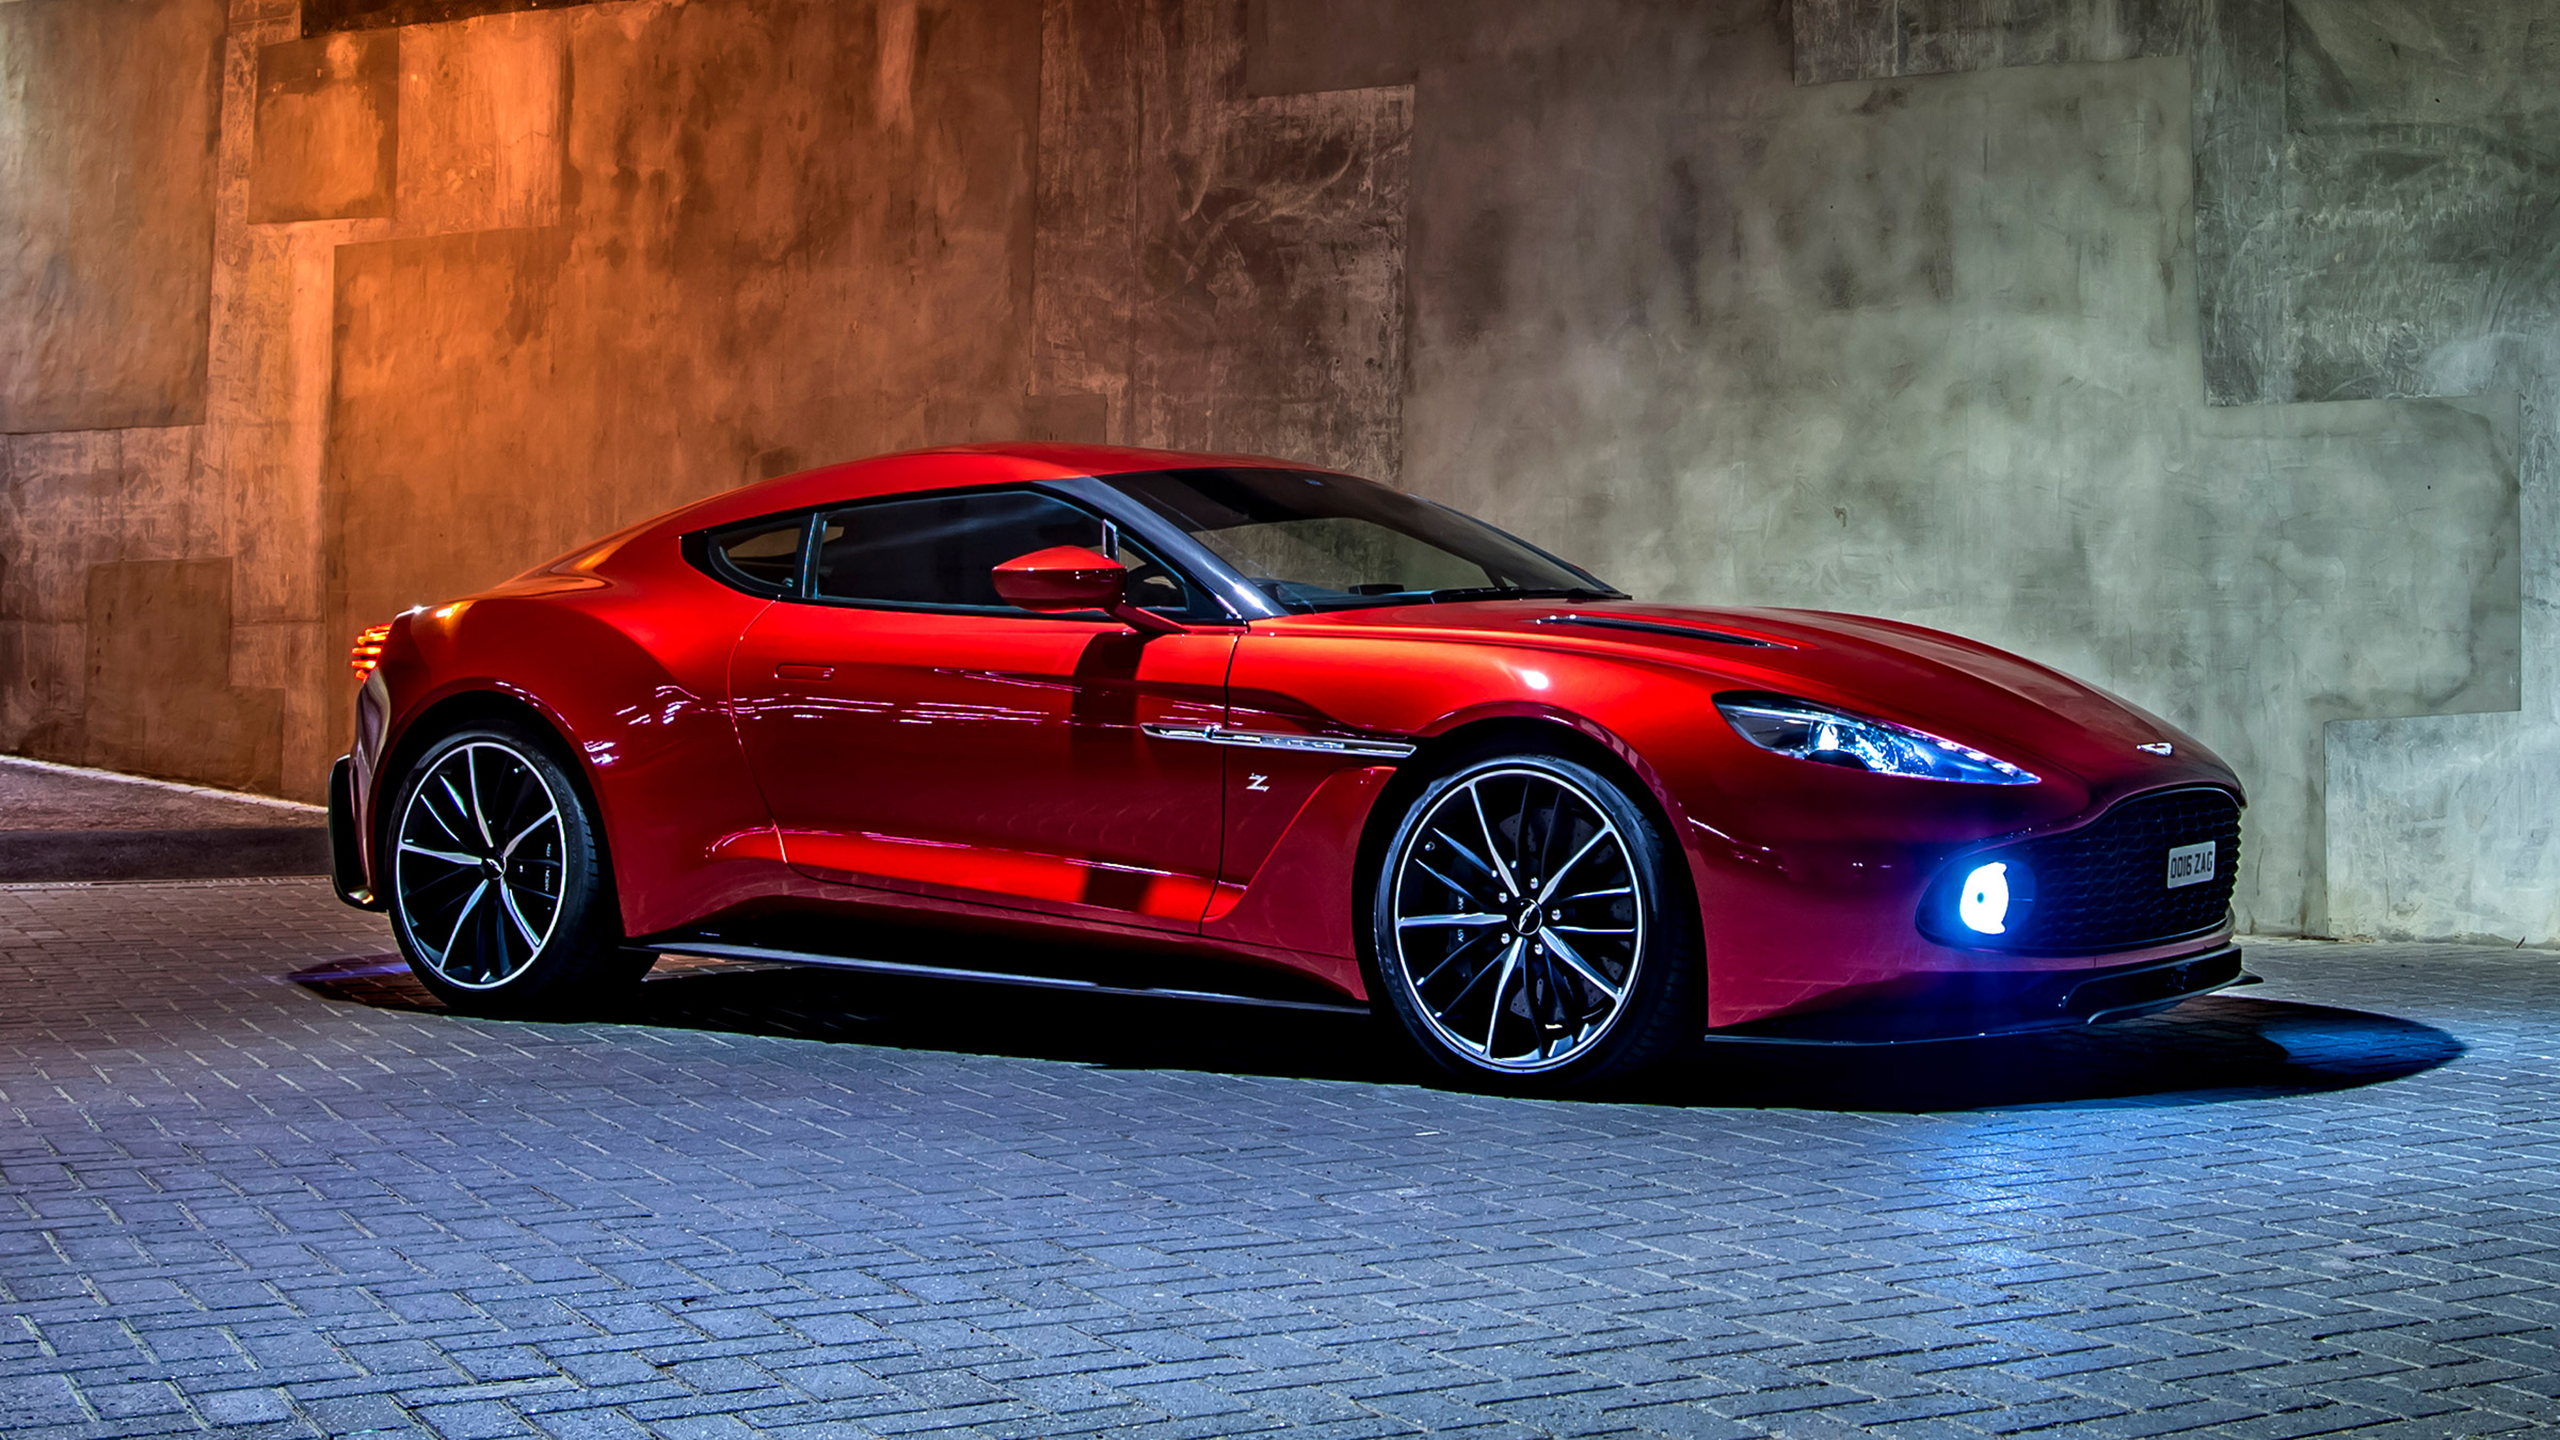 The Power To Conquer: The Aston Martin Vanquish Zagato